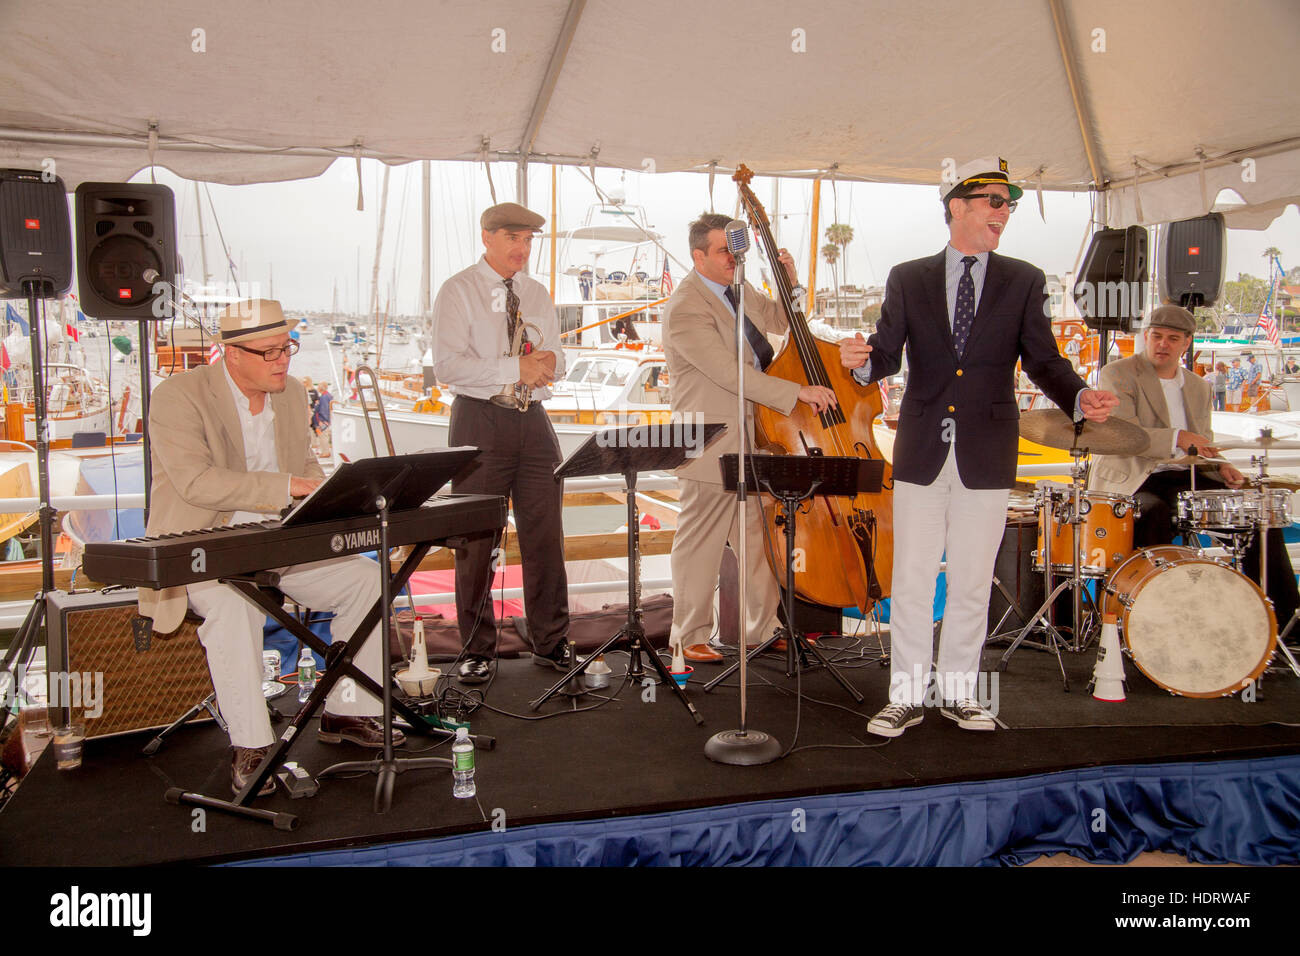 Son chanteur décoré dans un yachting cap, une bande de divertir les visiteurs à une exposition de vieux bateaux en bois dans une marina à Newport Beach, CA. Banque D'Images